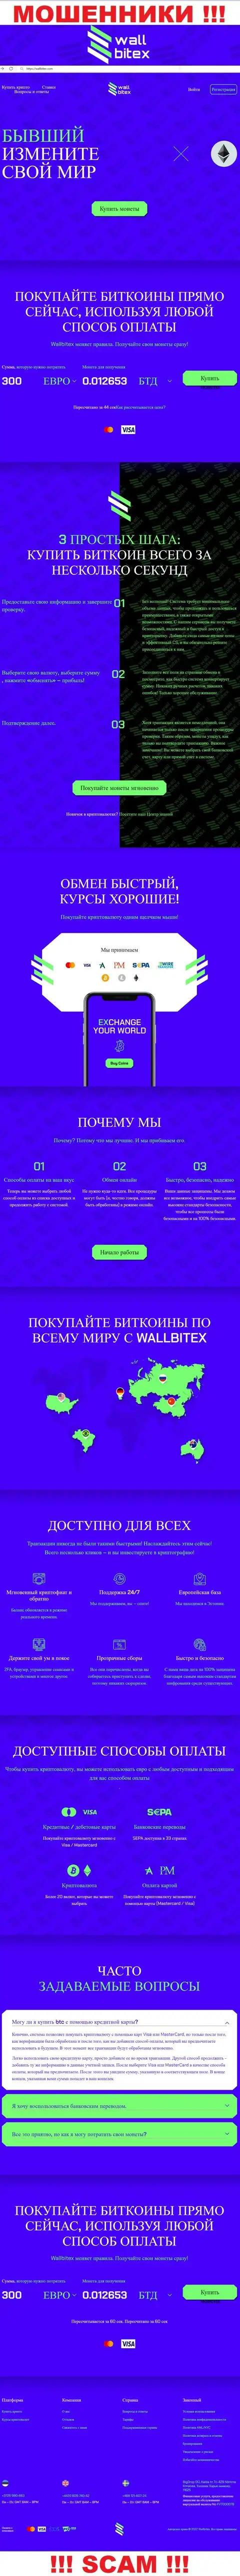 WallBitex Com - это сайт жульнической компании ВаллБитекс Ком